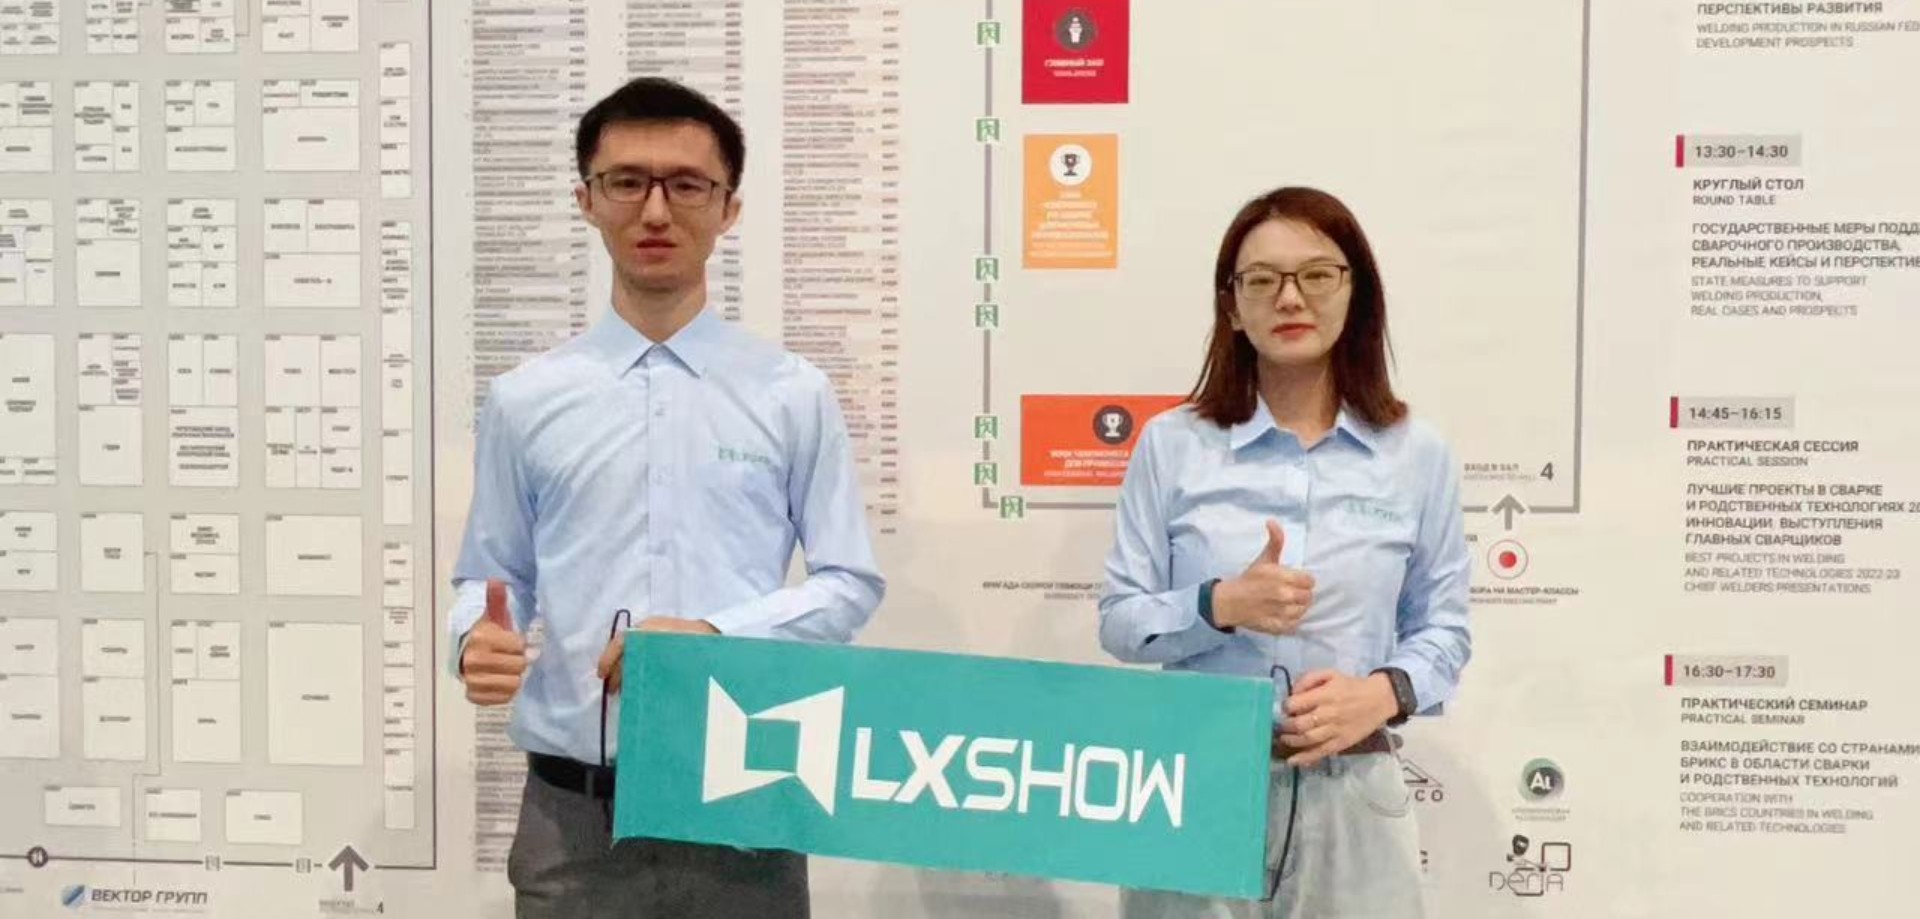 LXSHOW besuchte russische Kunden als einer der führenden Laserschneidhersteller